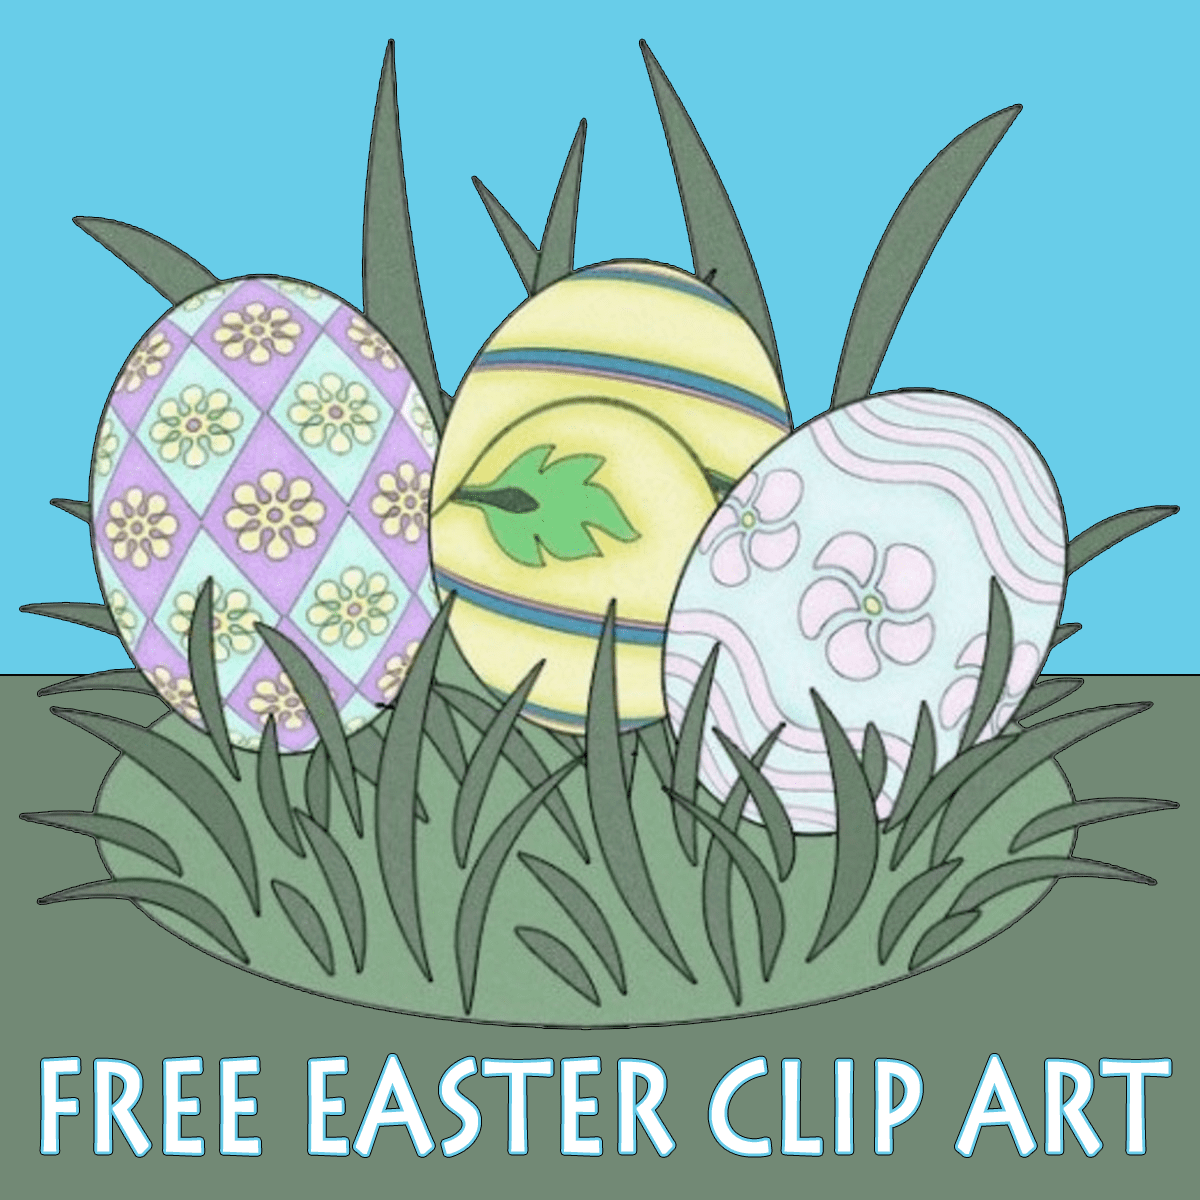 church easter egg hunt clip art